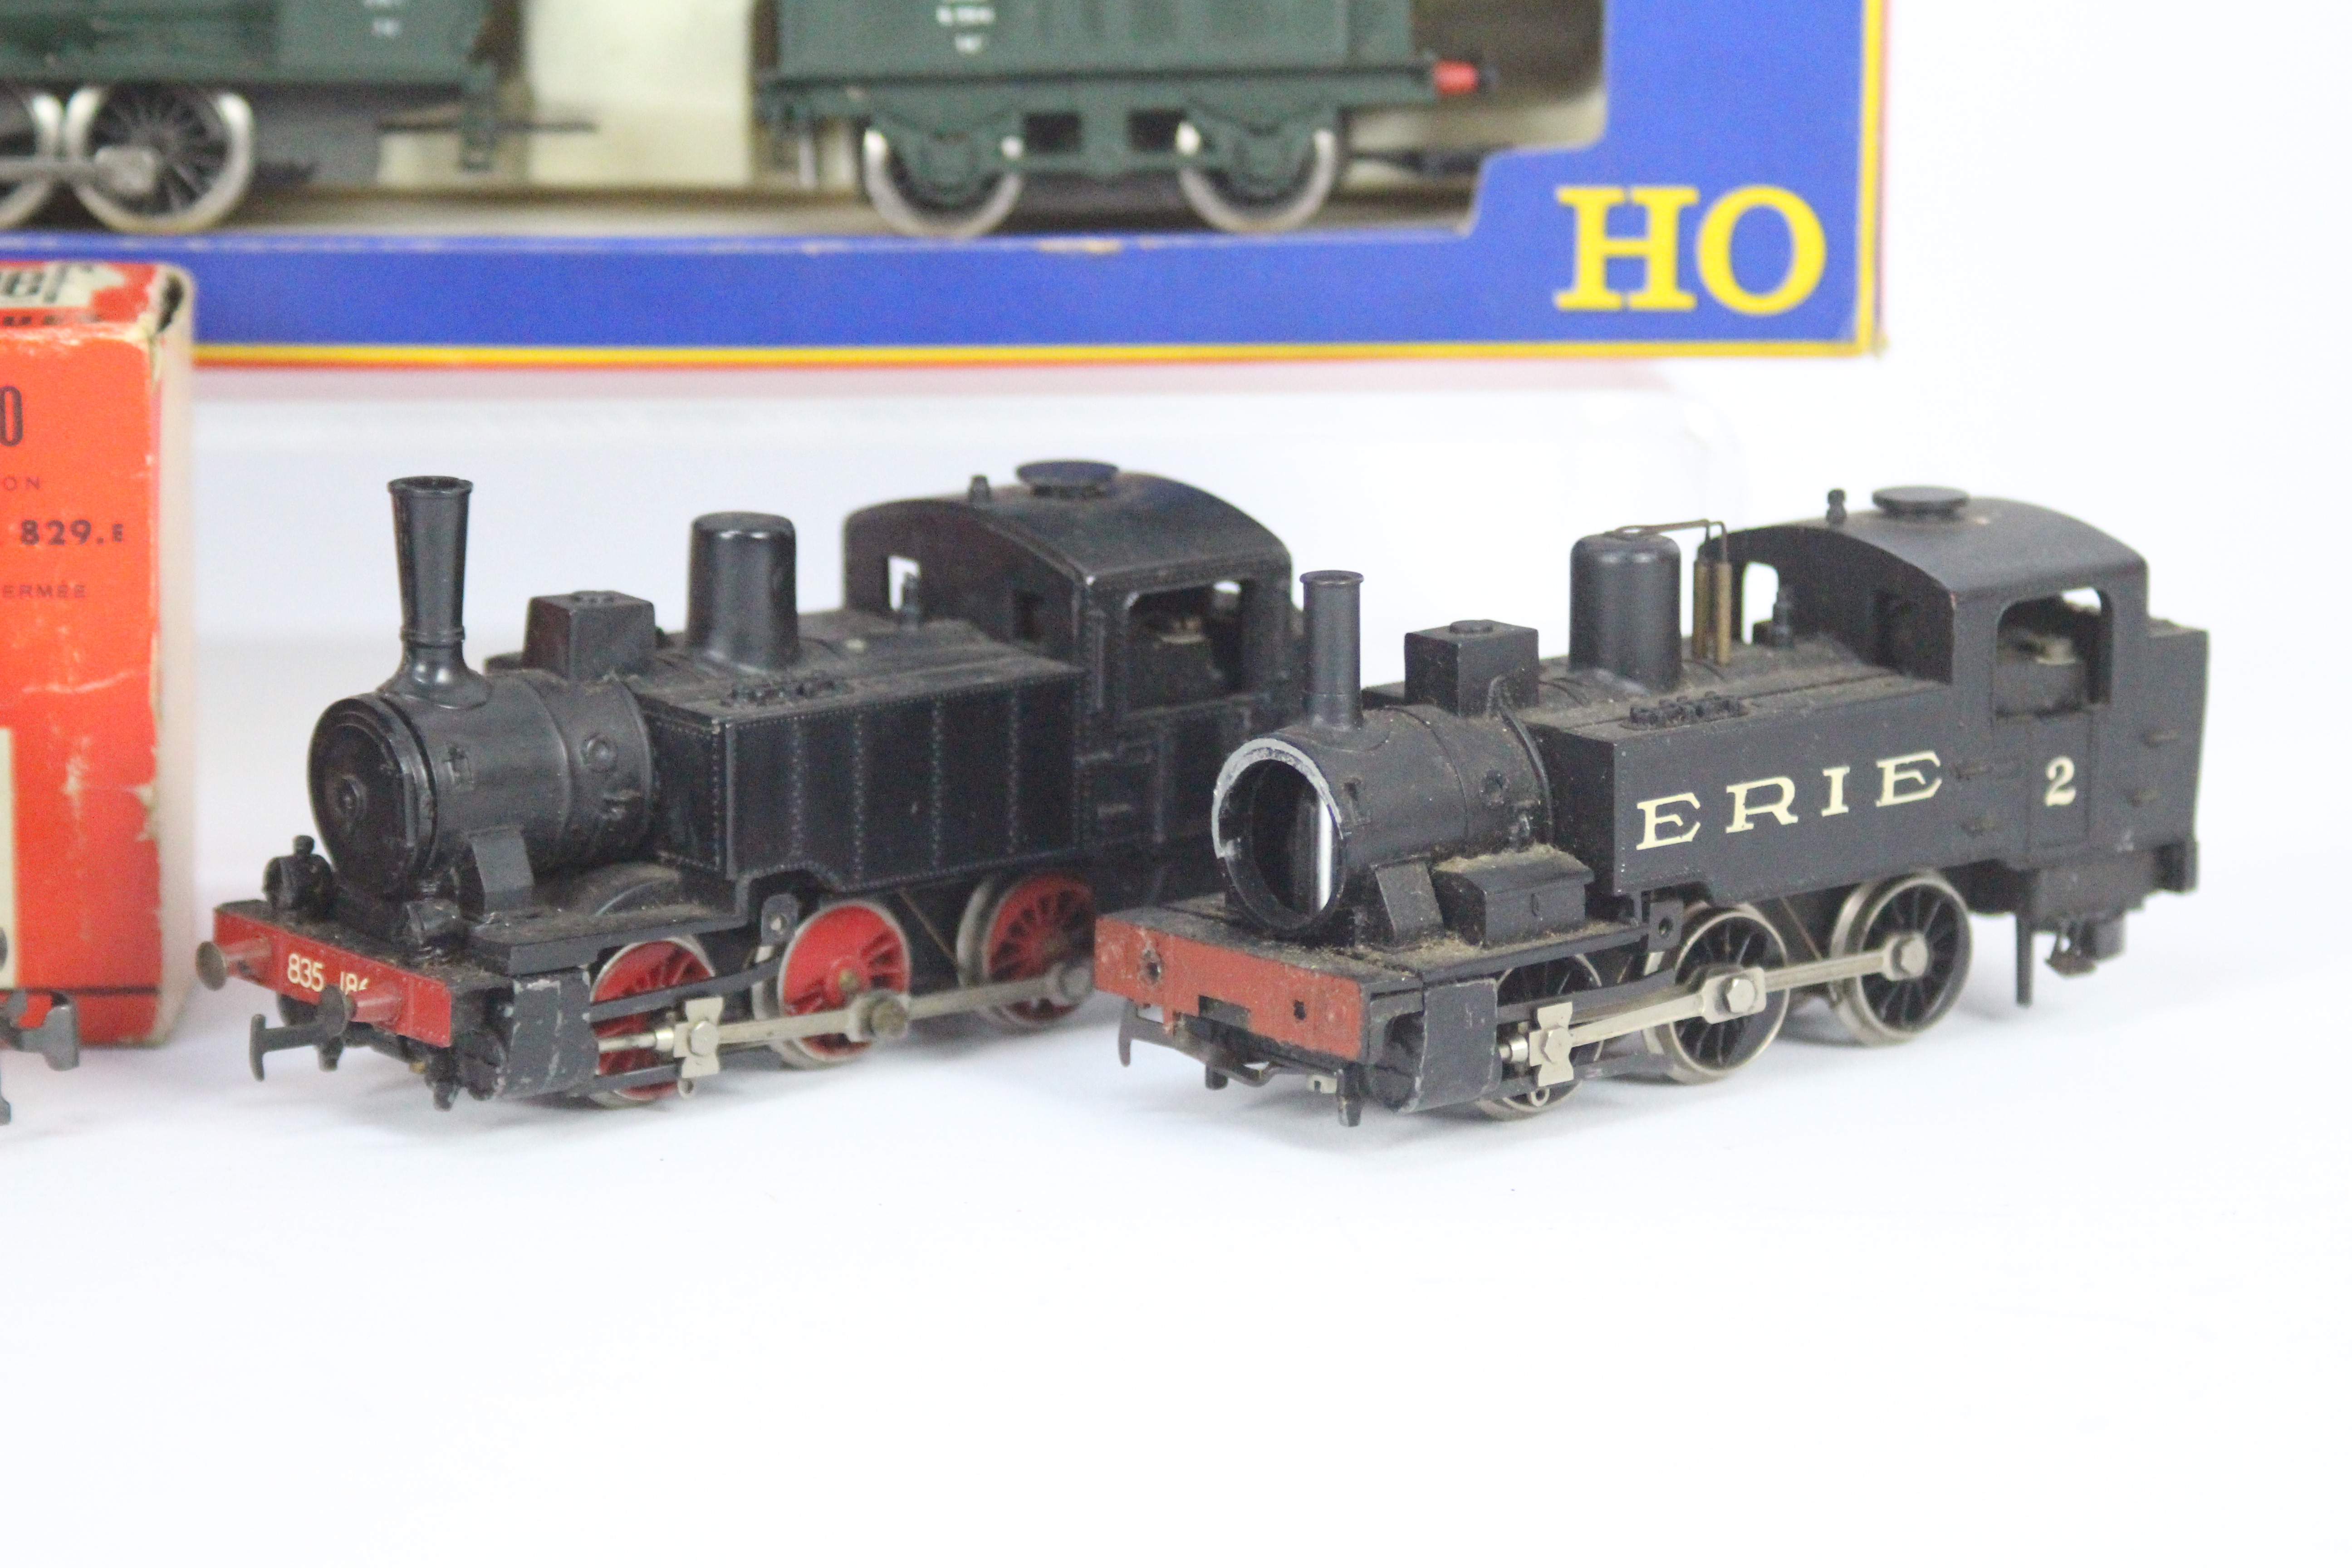 Rivarossi, Jouef - Four HO gauge steam locomotives. - Image 2 of 4